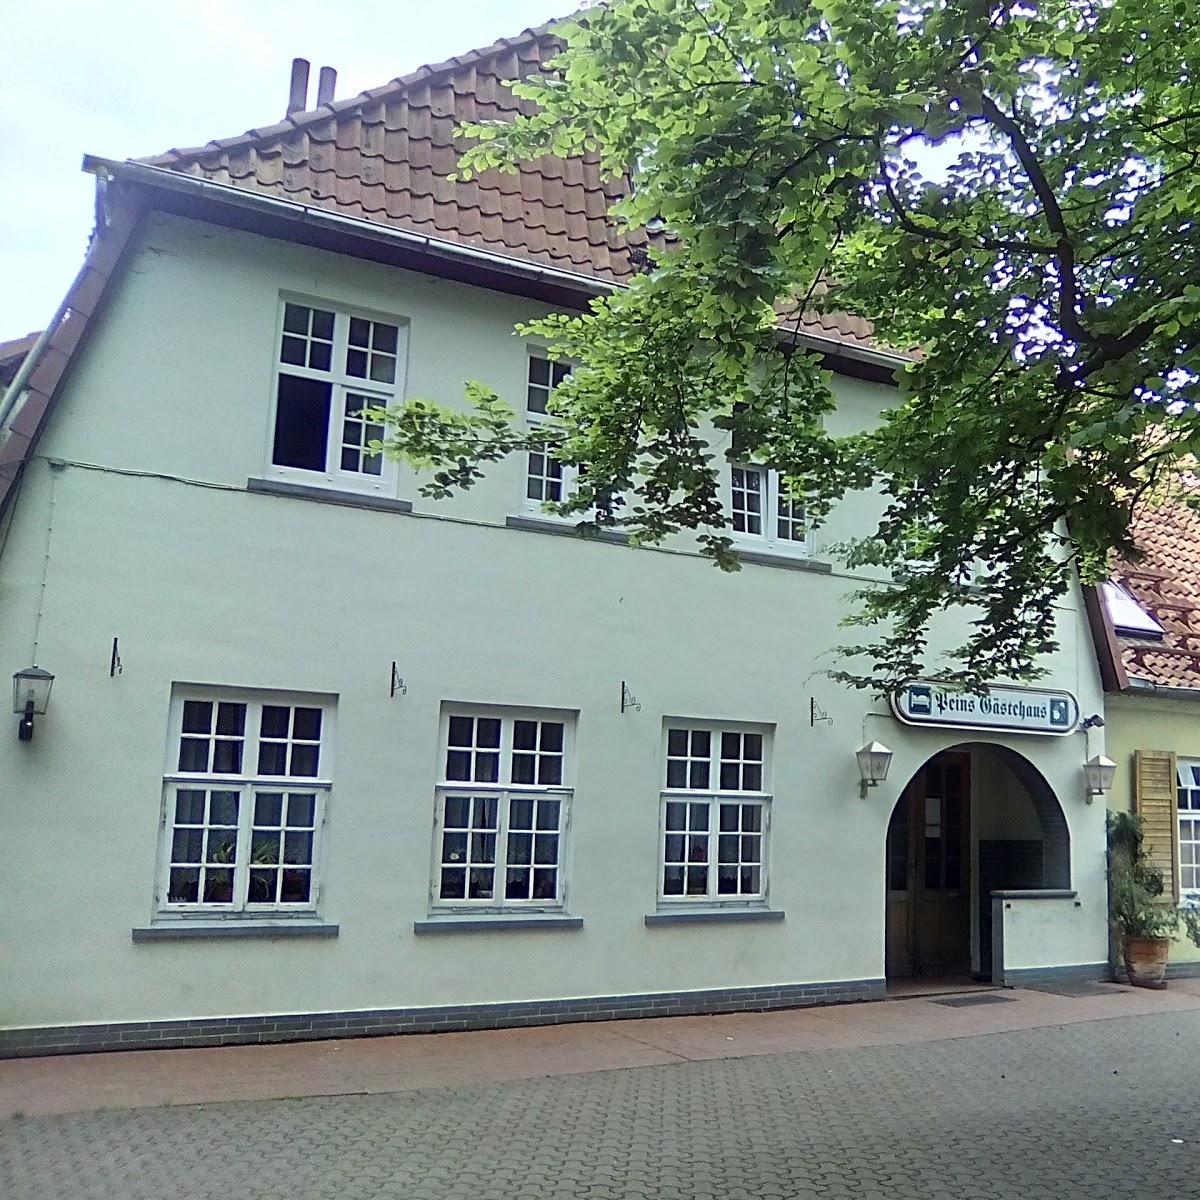 Restaurant "Peins Gästehaus" in Lilienthal